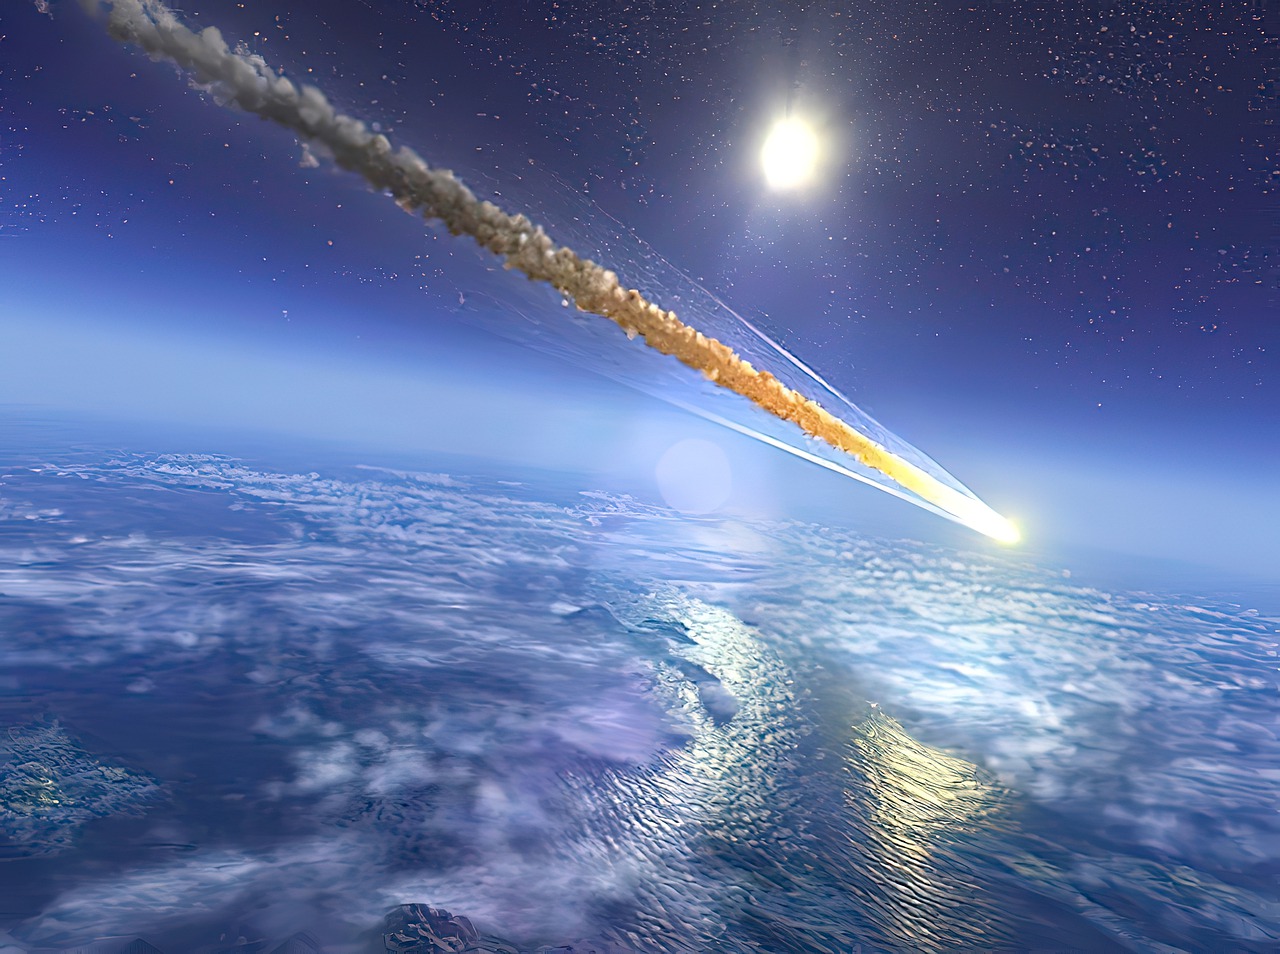 asteroid, meteorite, comet